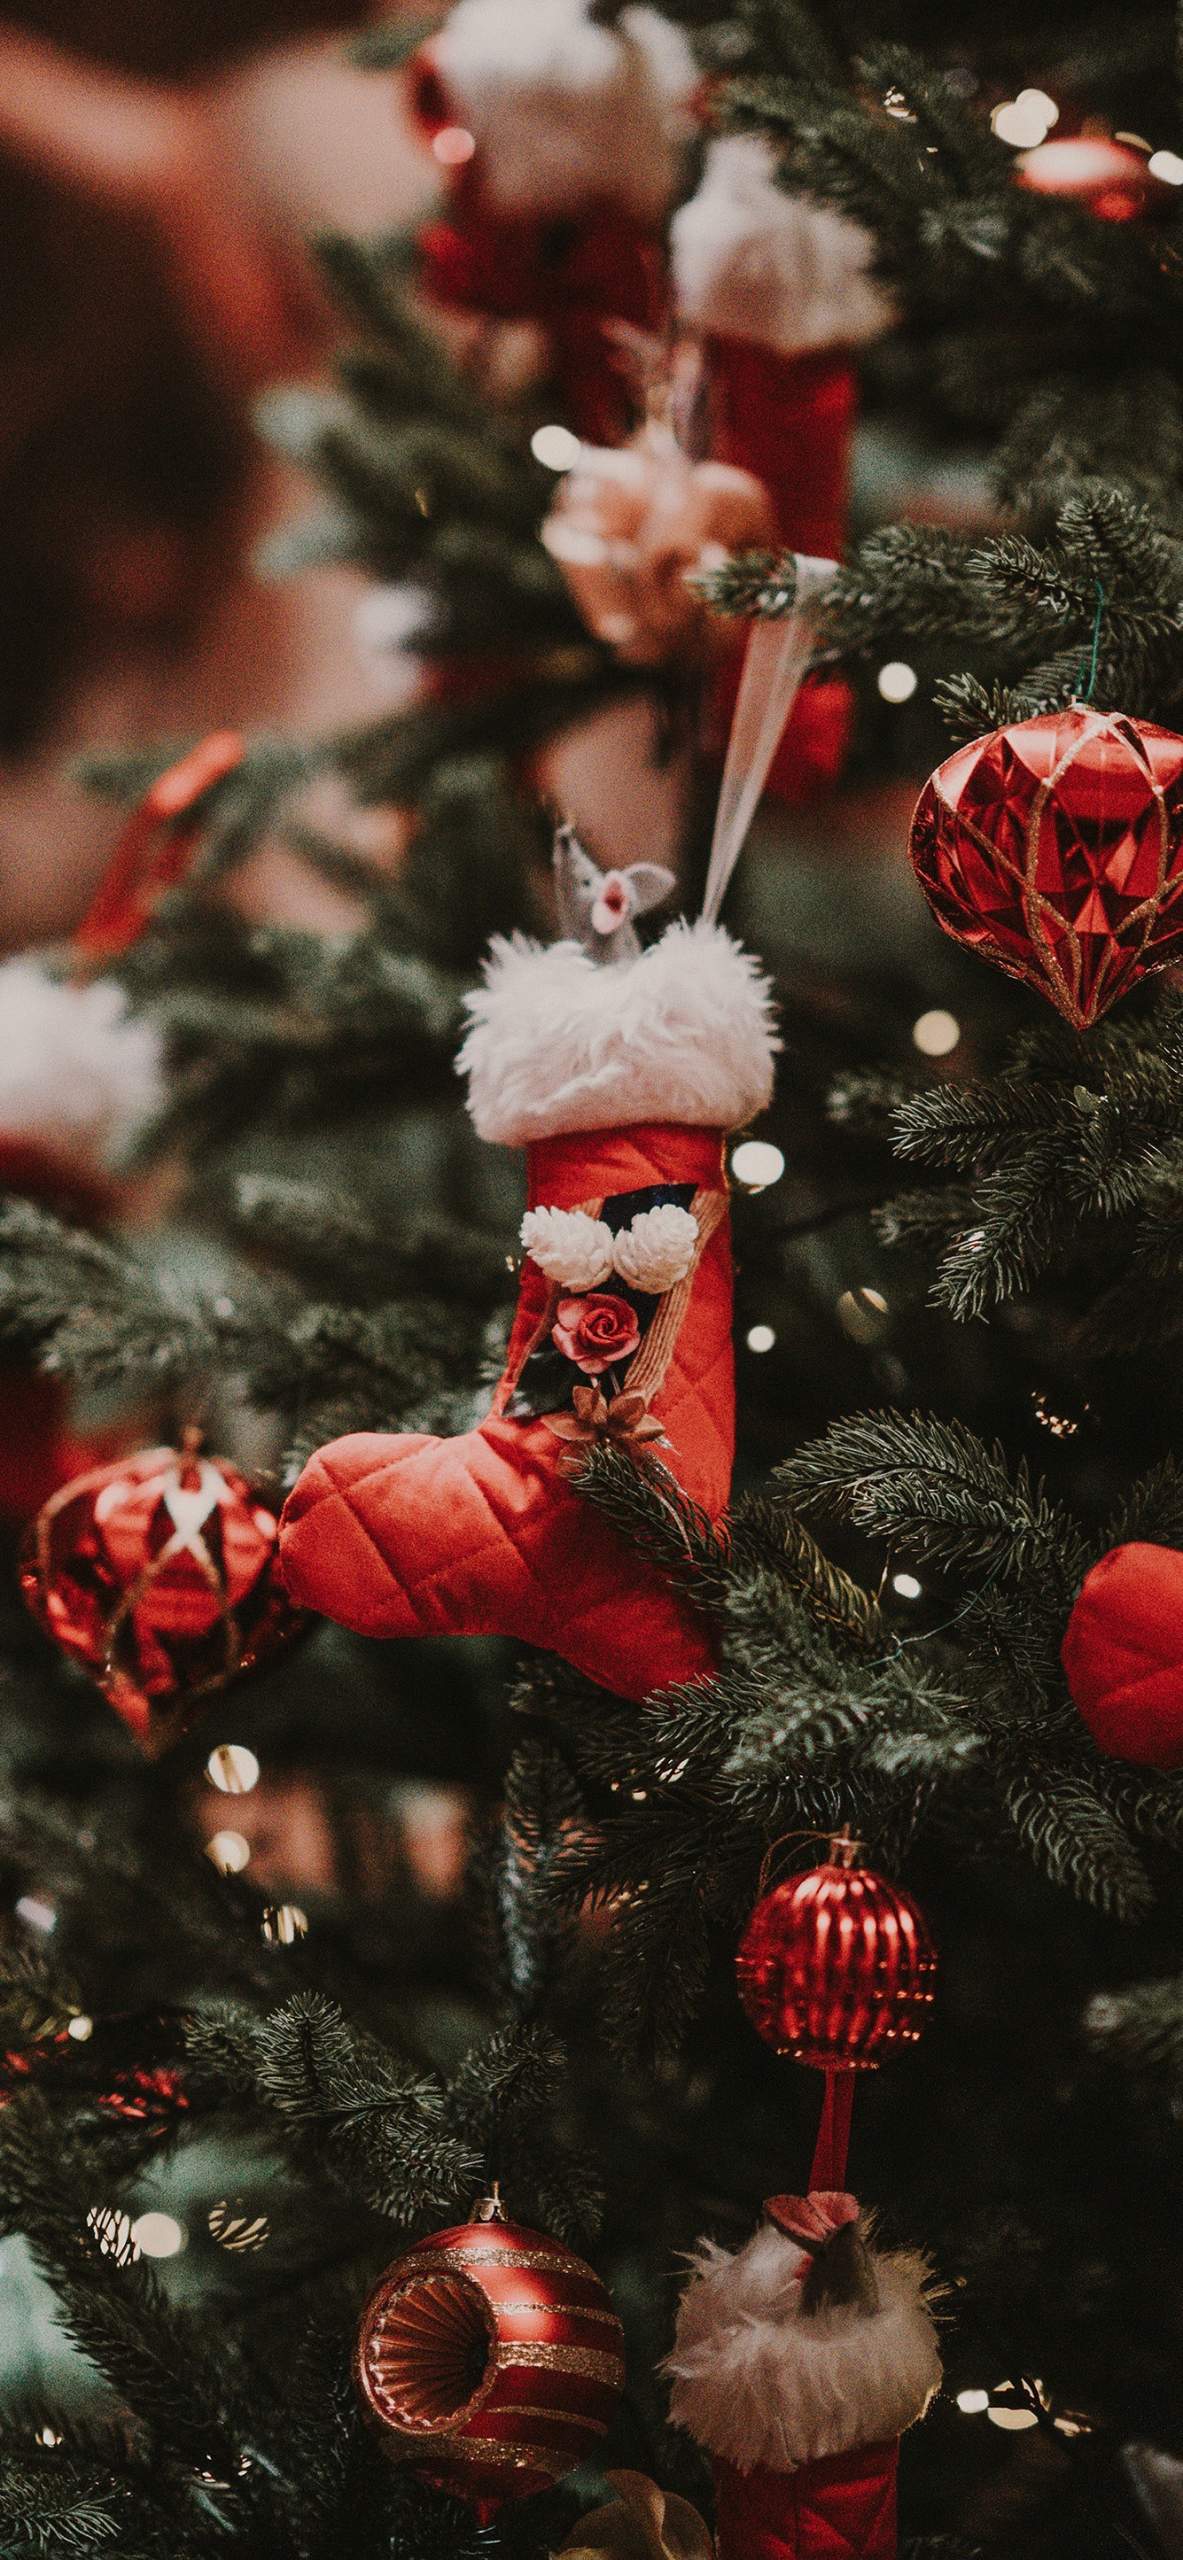 Hãy tạo không gian Giáng Sinh ấm áp trên thiết bị của bạn với những ảnh nền giáng sinh đầy màu sắc và sáng tạo. Tận hưởng không khí lễ hội đầy vui tươi và tràn đầy niềm vui trong mỗi lần mở máy. Xem thêm ảnh nền giáng sinh để tăng thêm sự hứng khởi cho mùa lễ hội.